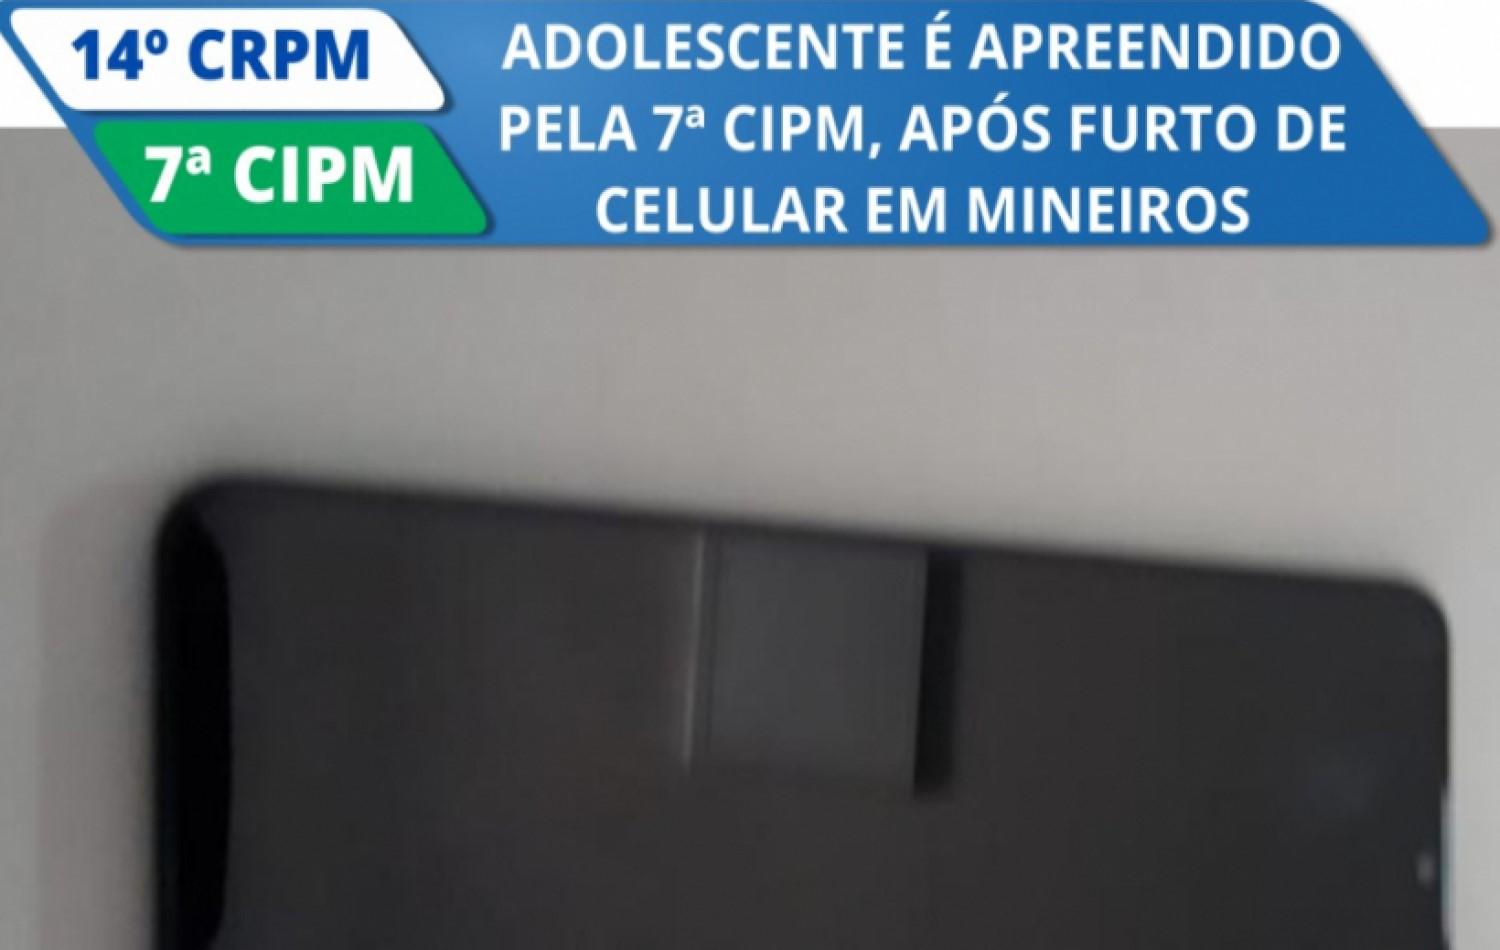 Adolescente é apreendido pela 7ª CIPM, após furto de celular em Mineiros.